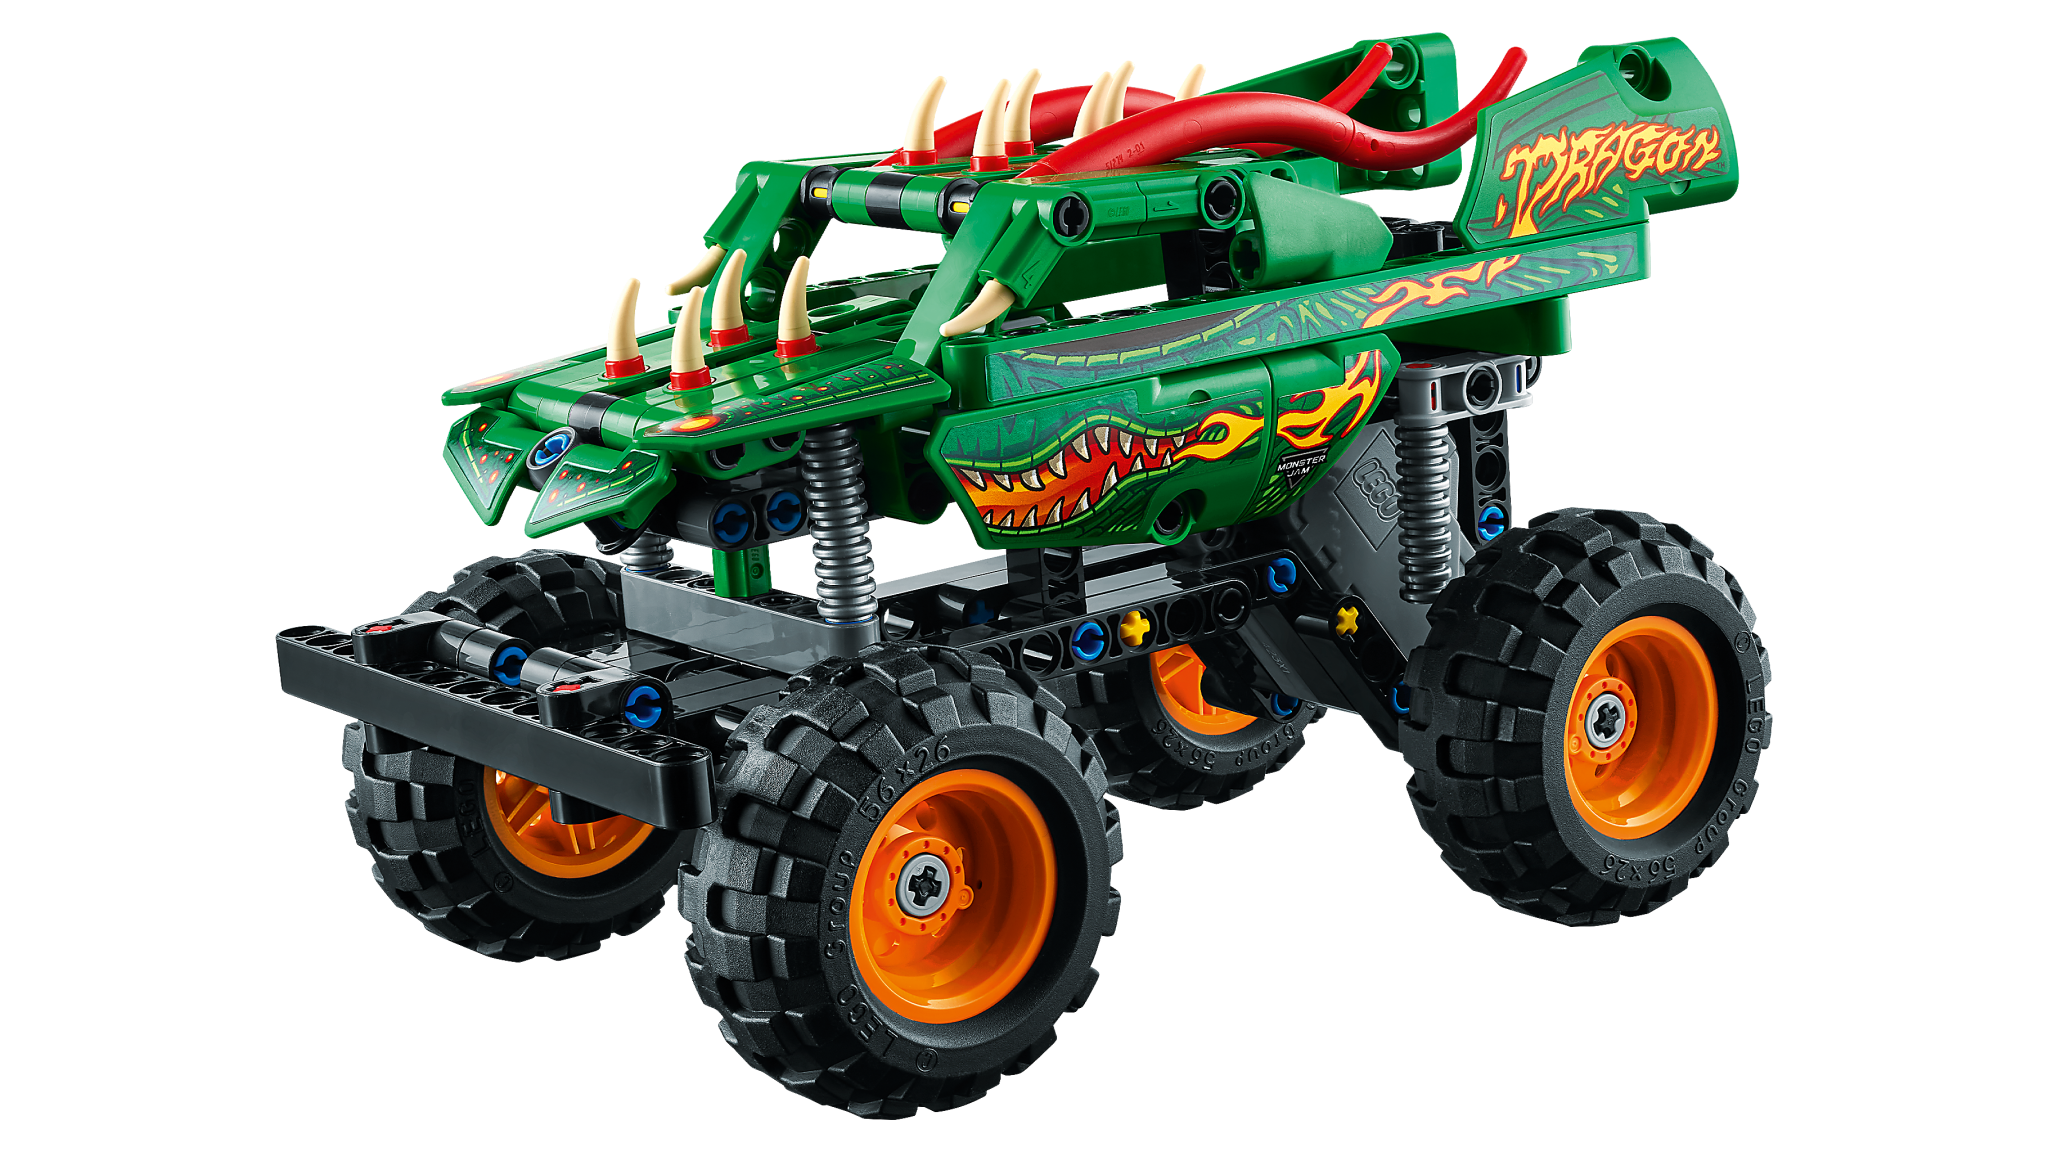 Lego Lego 42149 Technic - Monster Jam Dragon